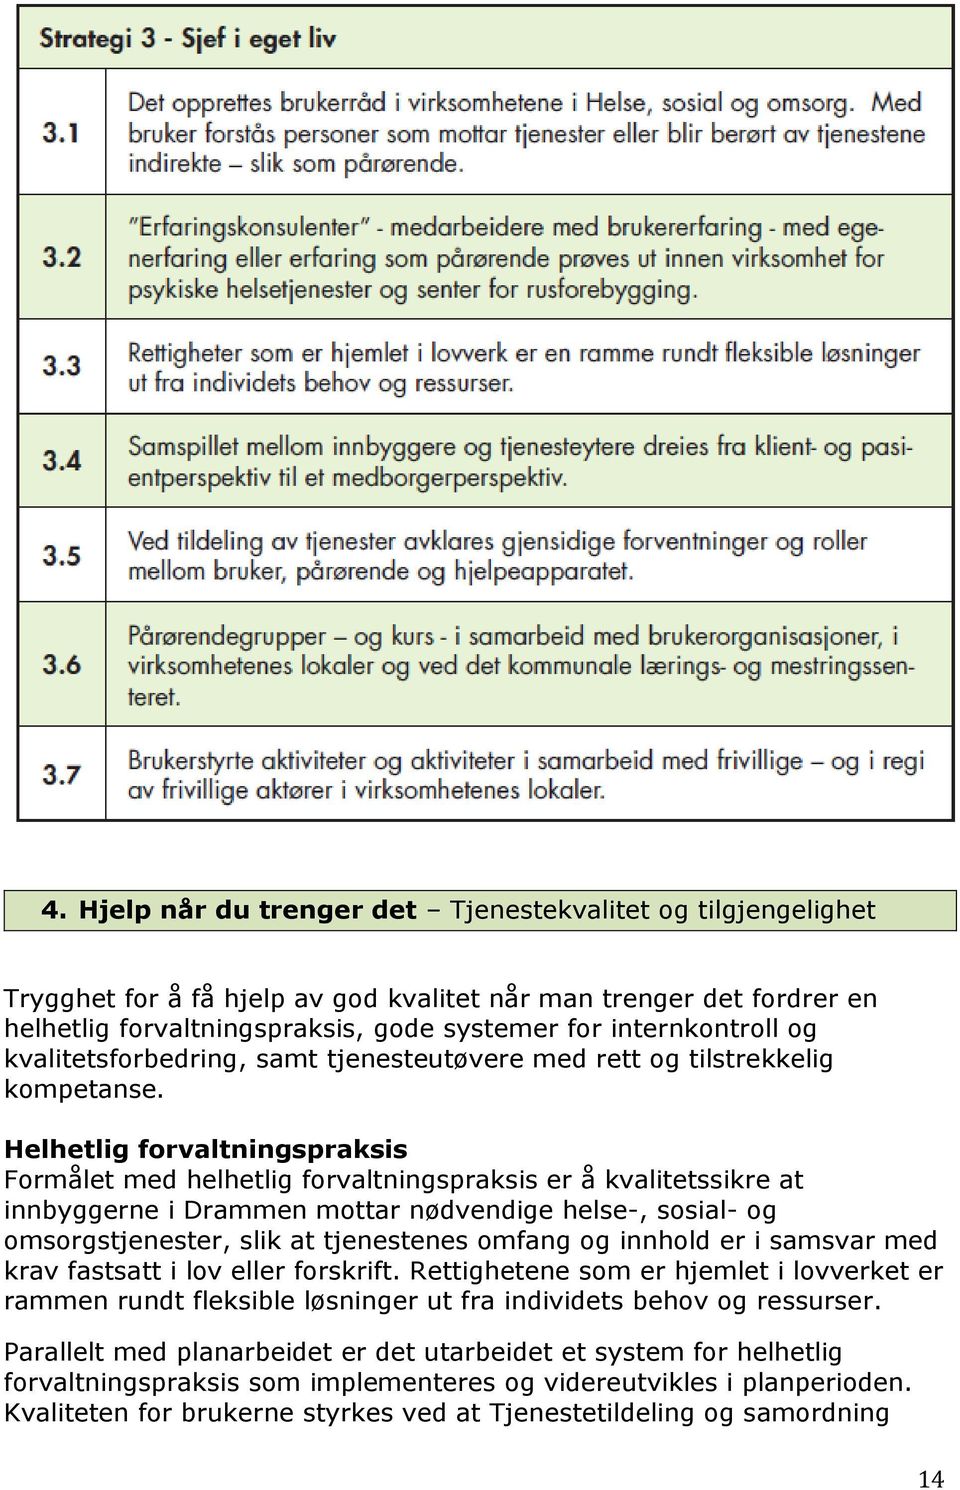 Helhetlig forvaltningspraksis Formålet med helhetlig forvaltningspraksis er å kvalitetssikre at innbyggerne i Drammen mottar nødvendige helse-, sosial- og omsorgstjenester, slik at tjenestenes omfang